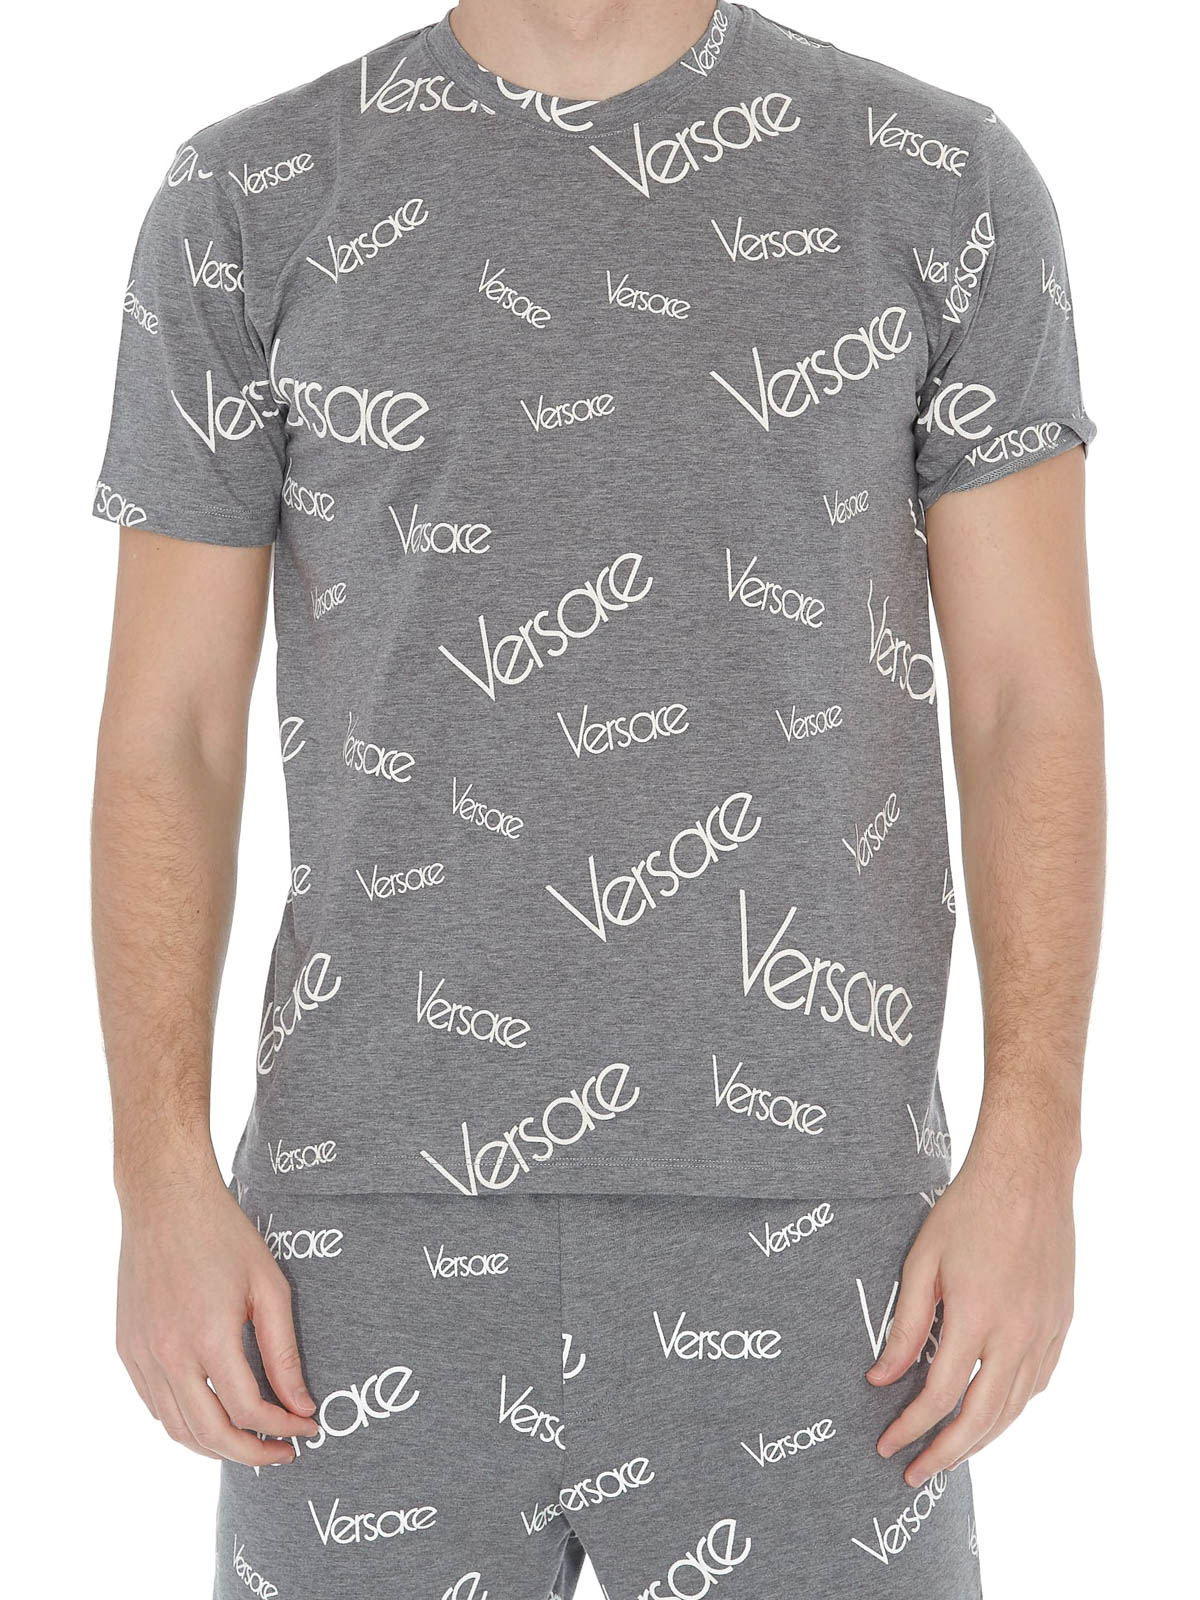 versace grey shirt